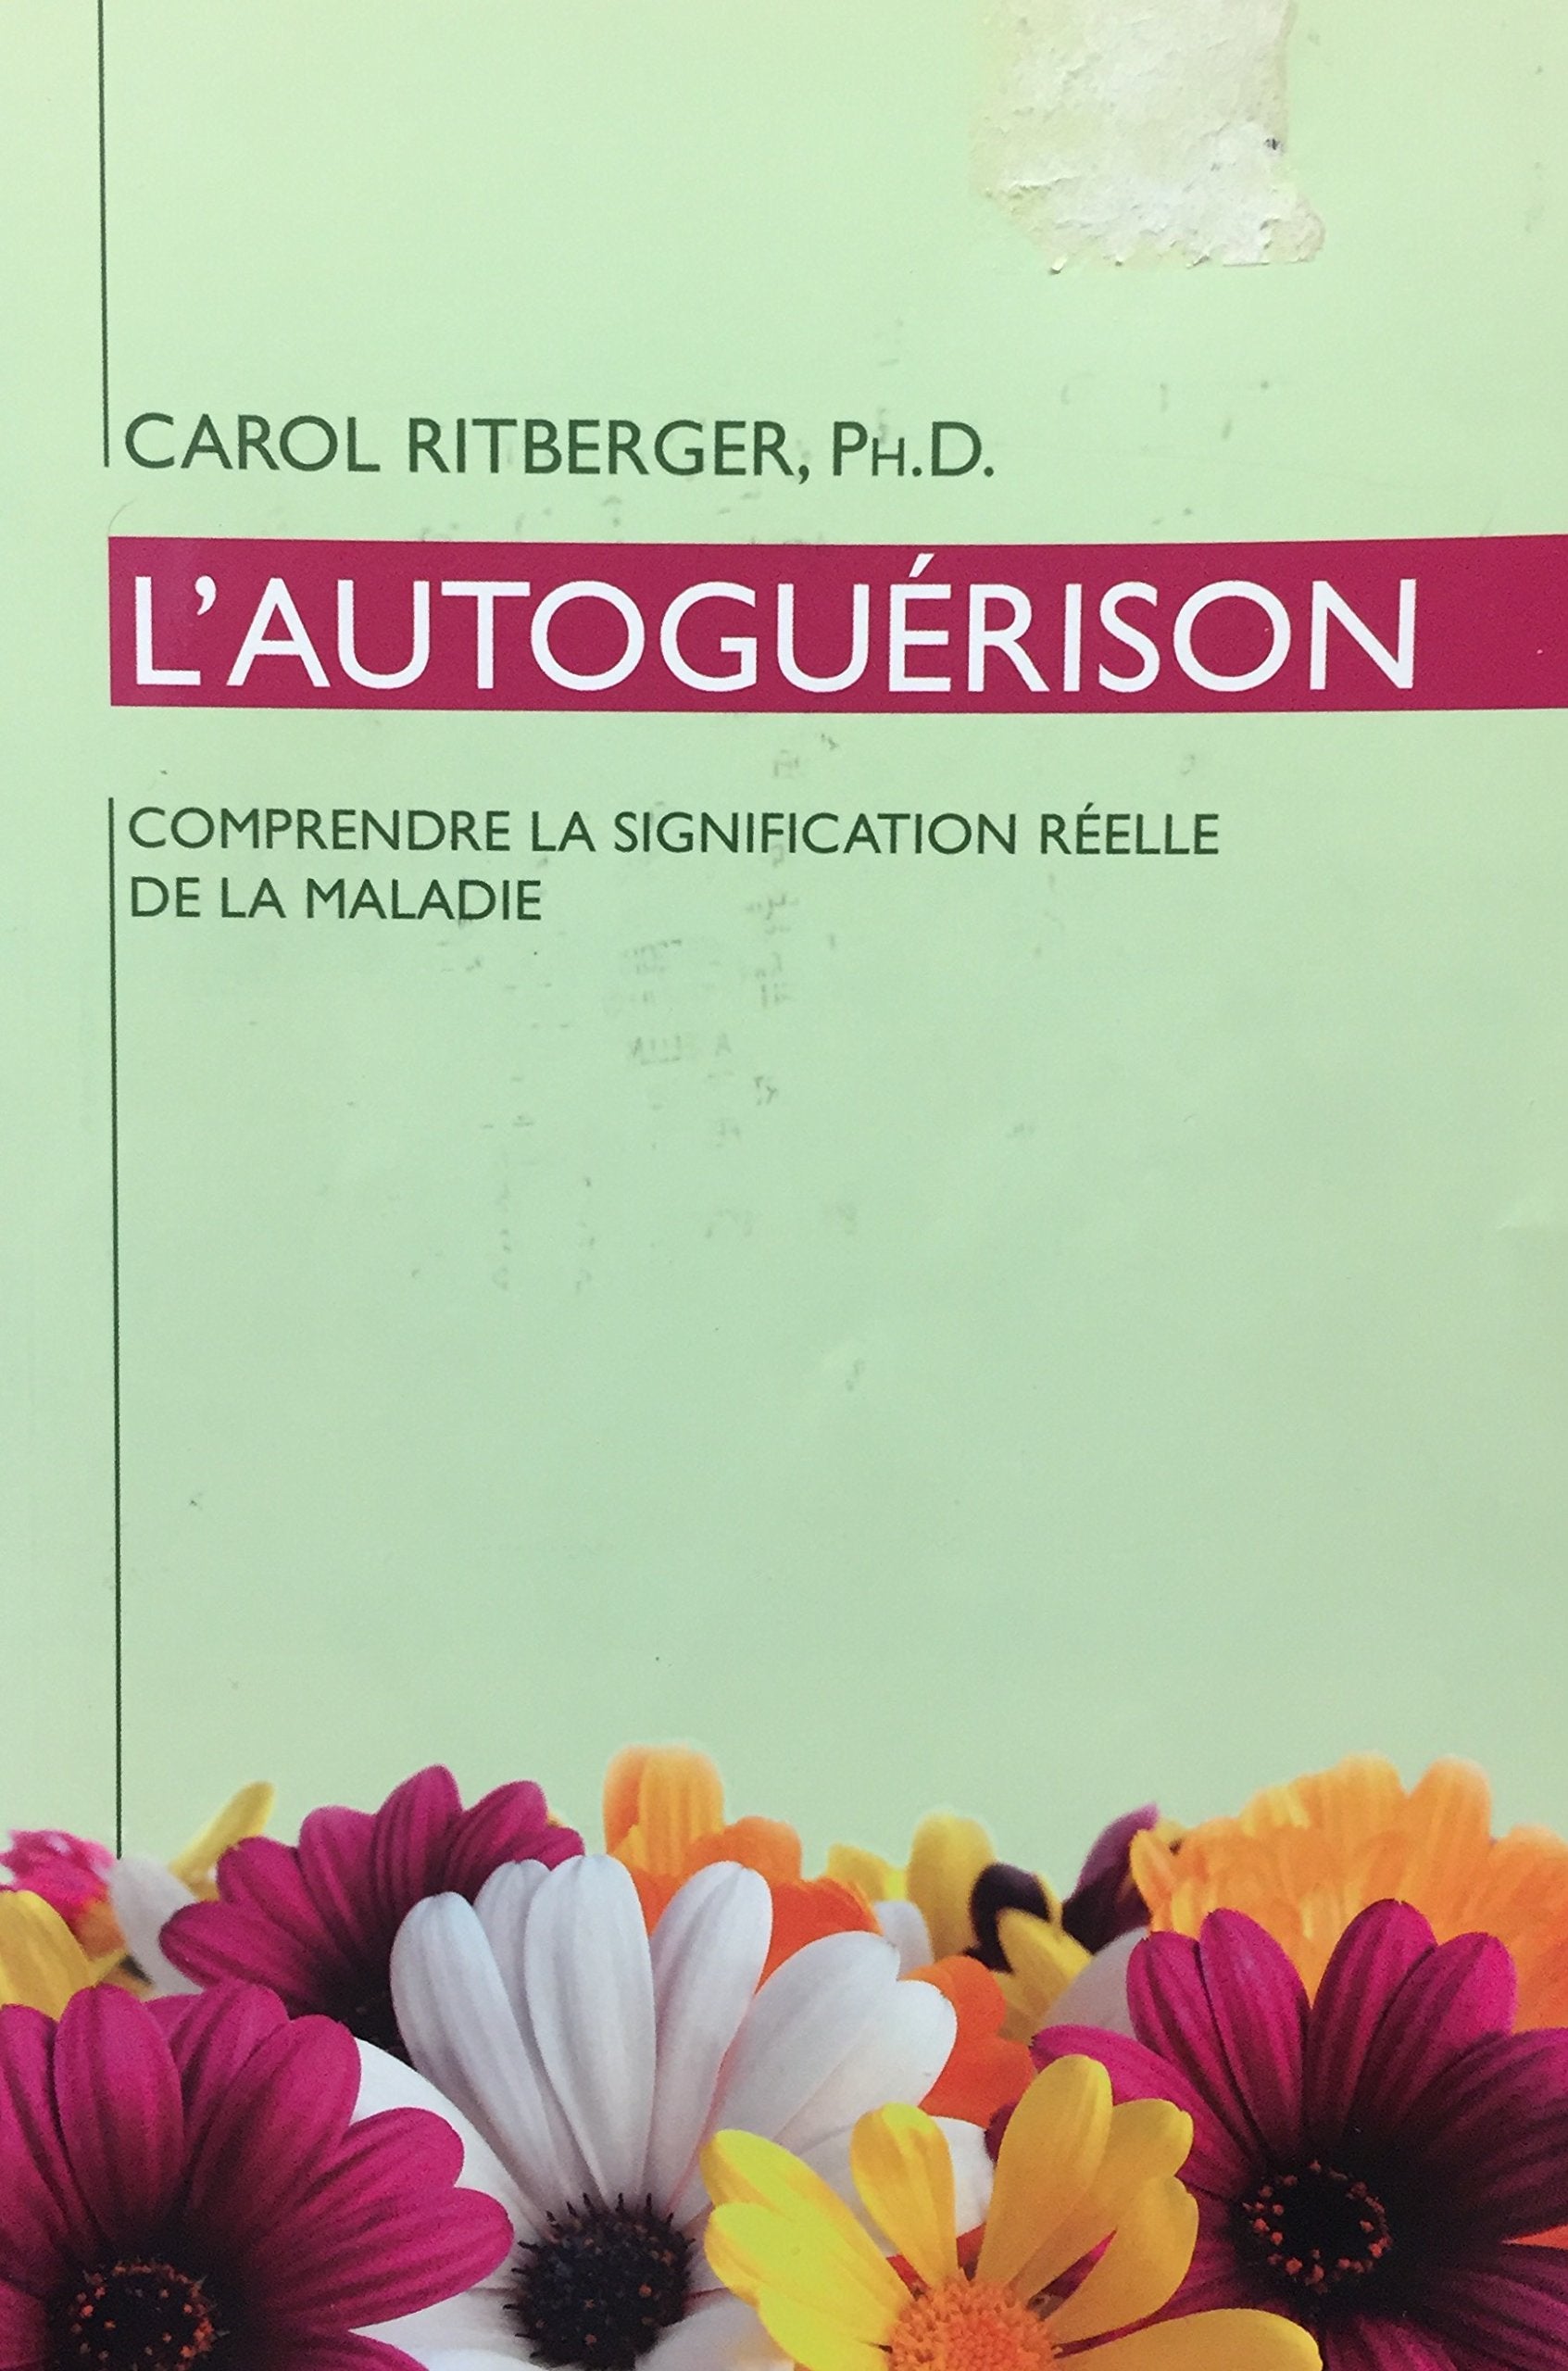 Livre ISBN 2895658315 L'autoguérison : Comprendre la signification de la maladie (Carol Ritberger)